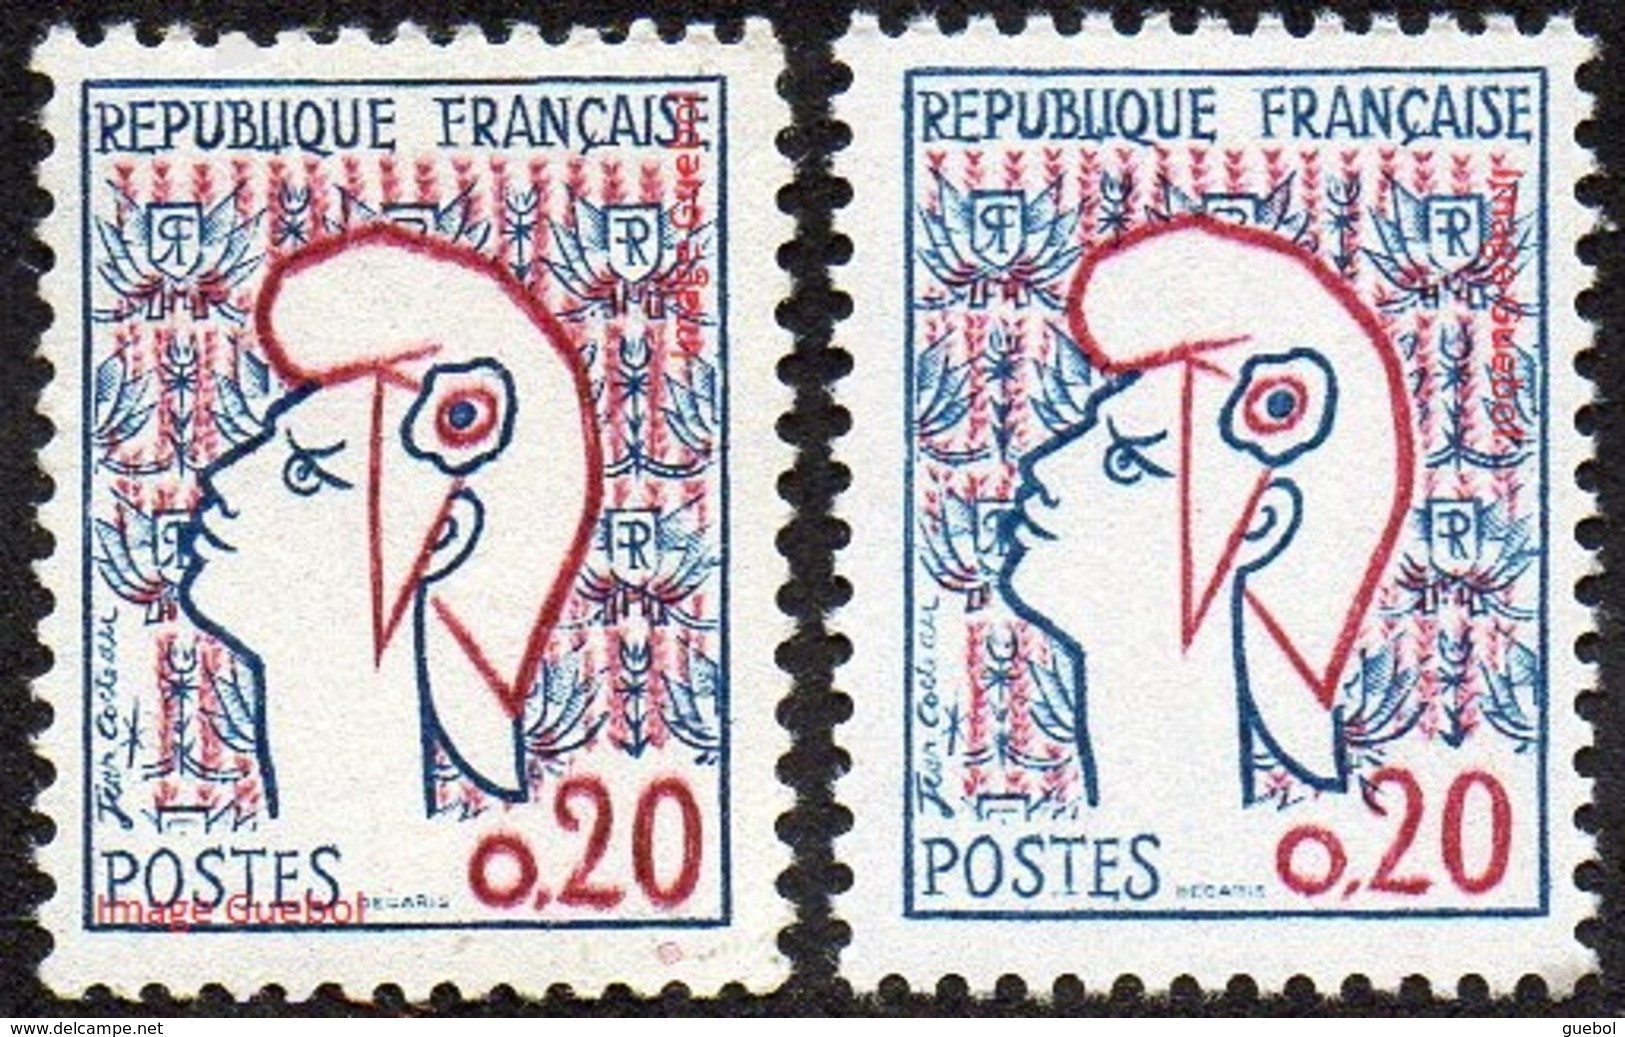 France Marianne De Cocteau N° 1282,** Et 1282_a ** Les 2 Types - 1961 Marianne Of Cocteau